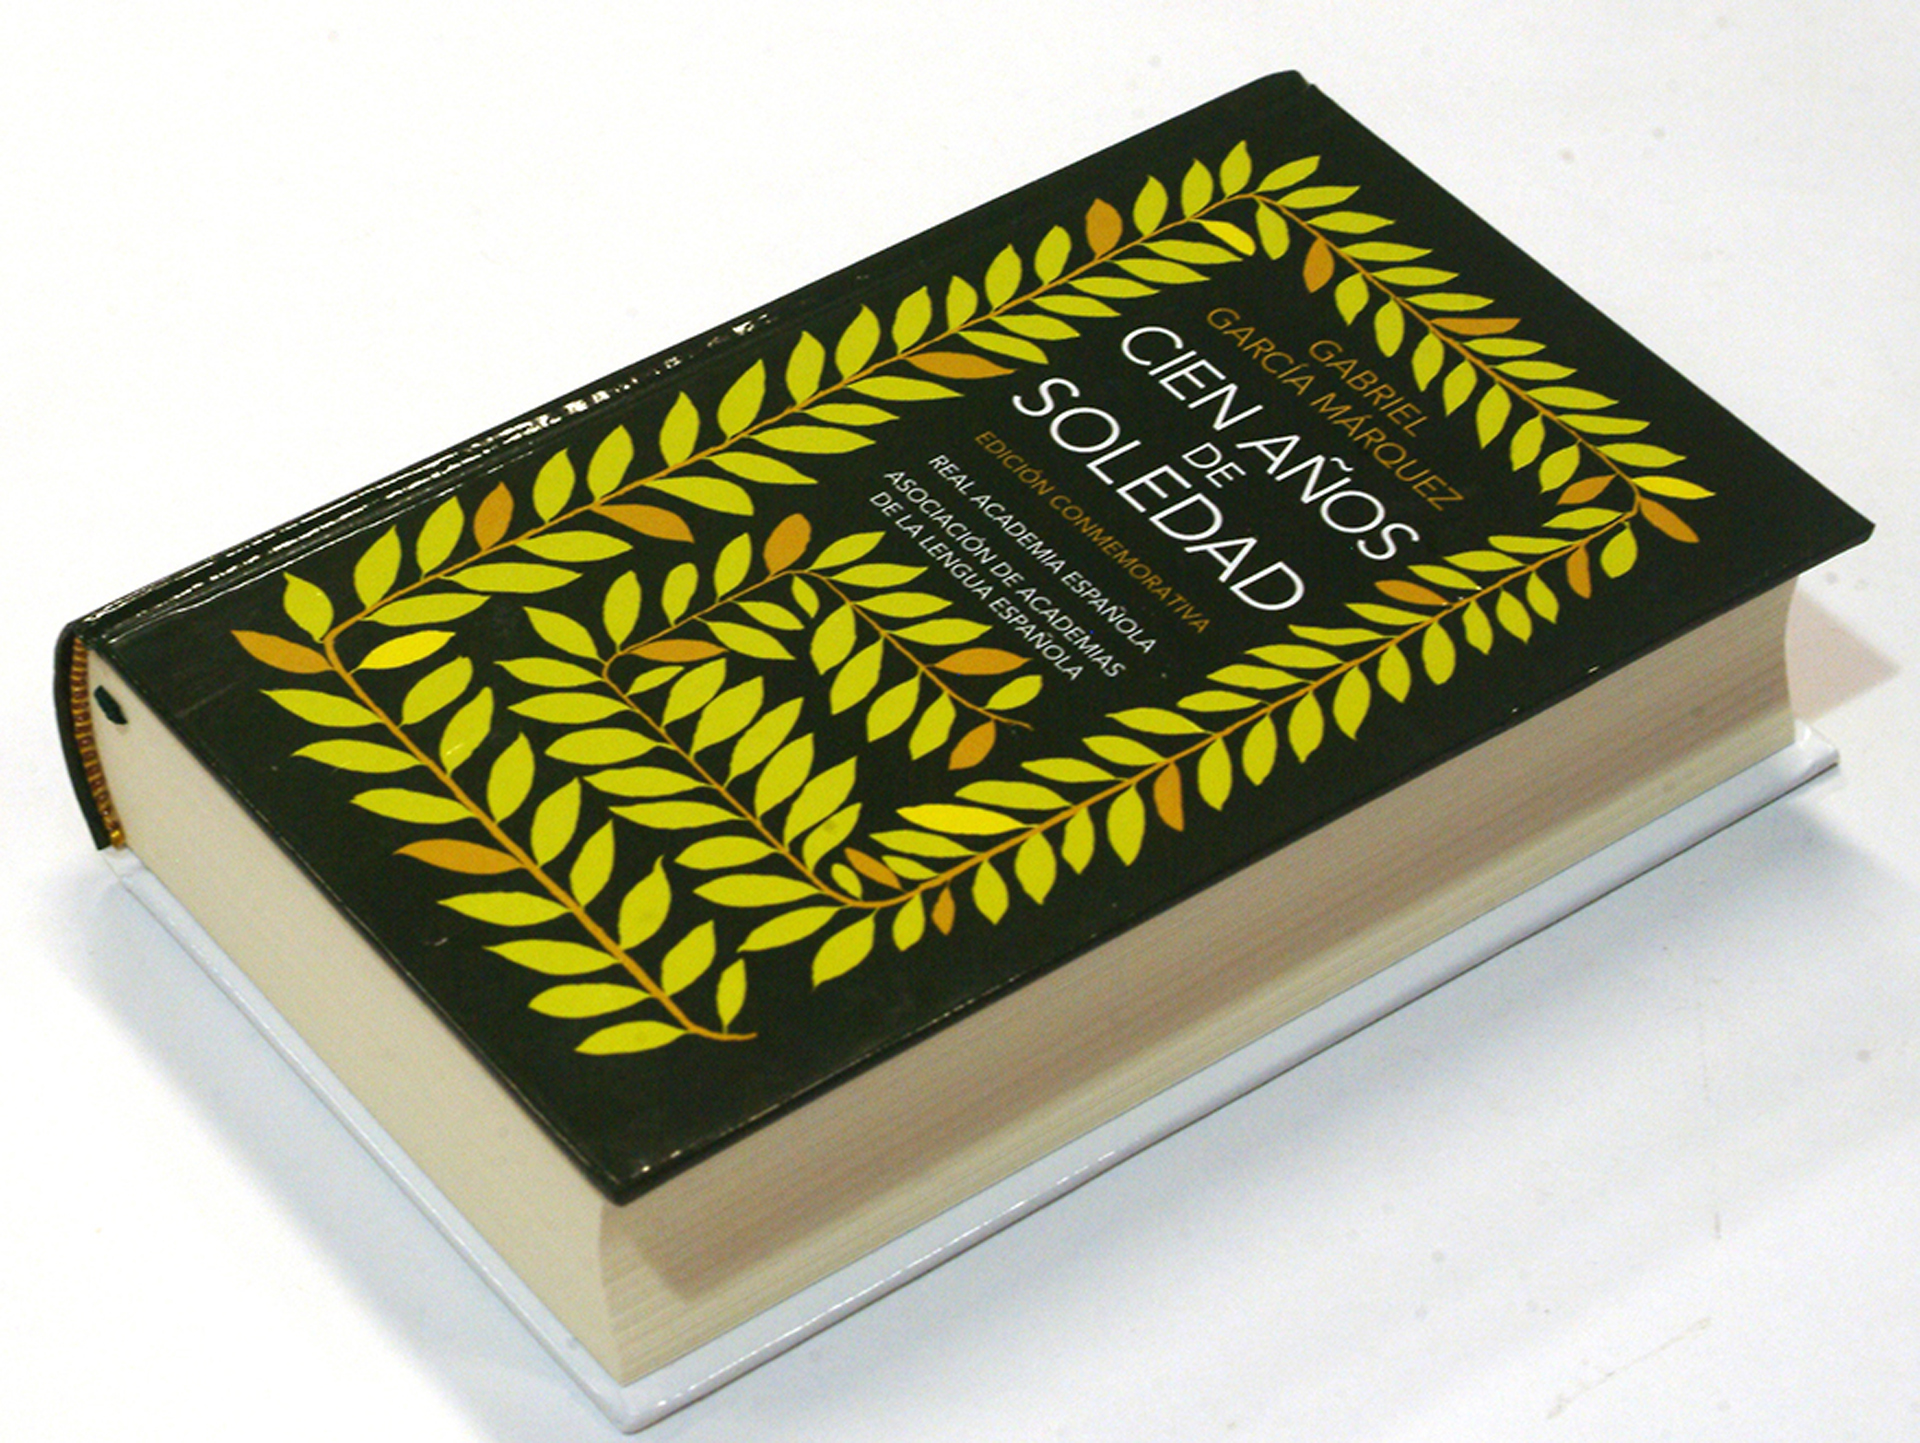 Edición conmemorativa de "Cien años de soledad", novela de Gabriel García Márquez publicada por primera vez en 1967